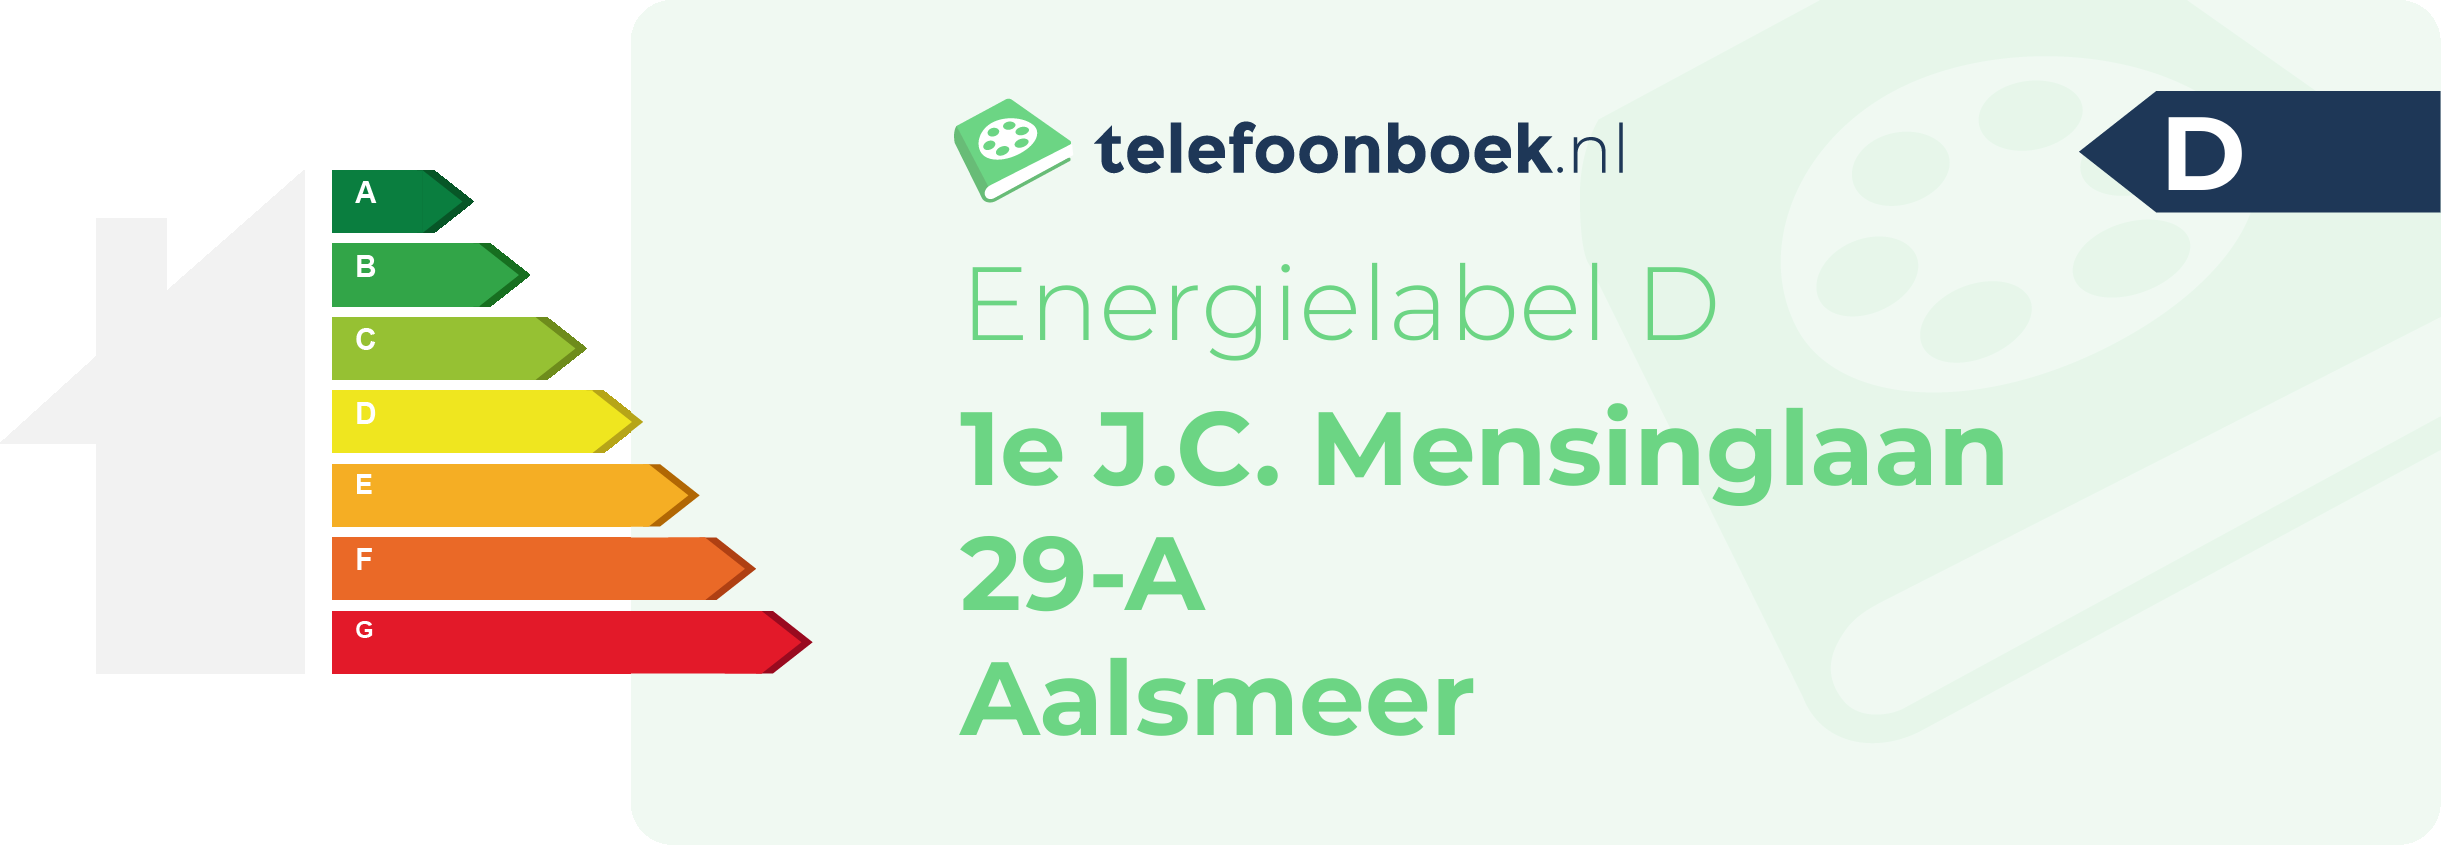 Energielabel 1e J.C. Mensinglaan 29-A Aalsmeer